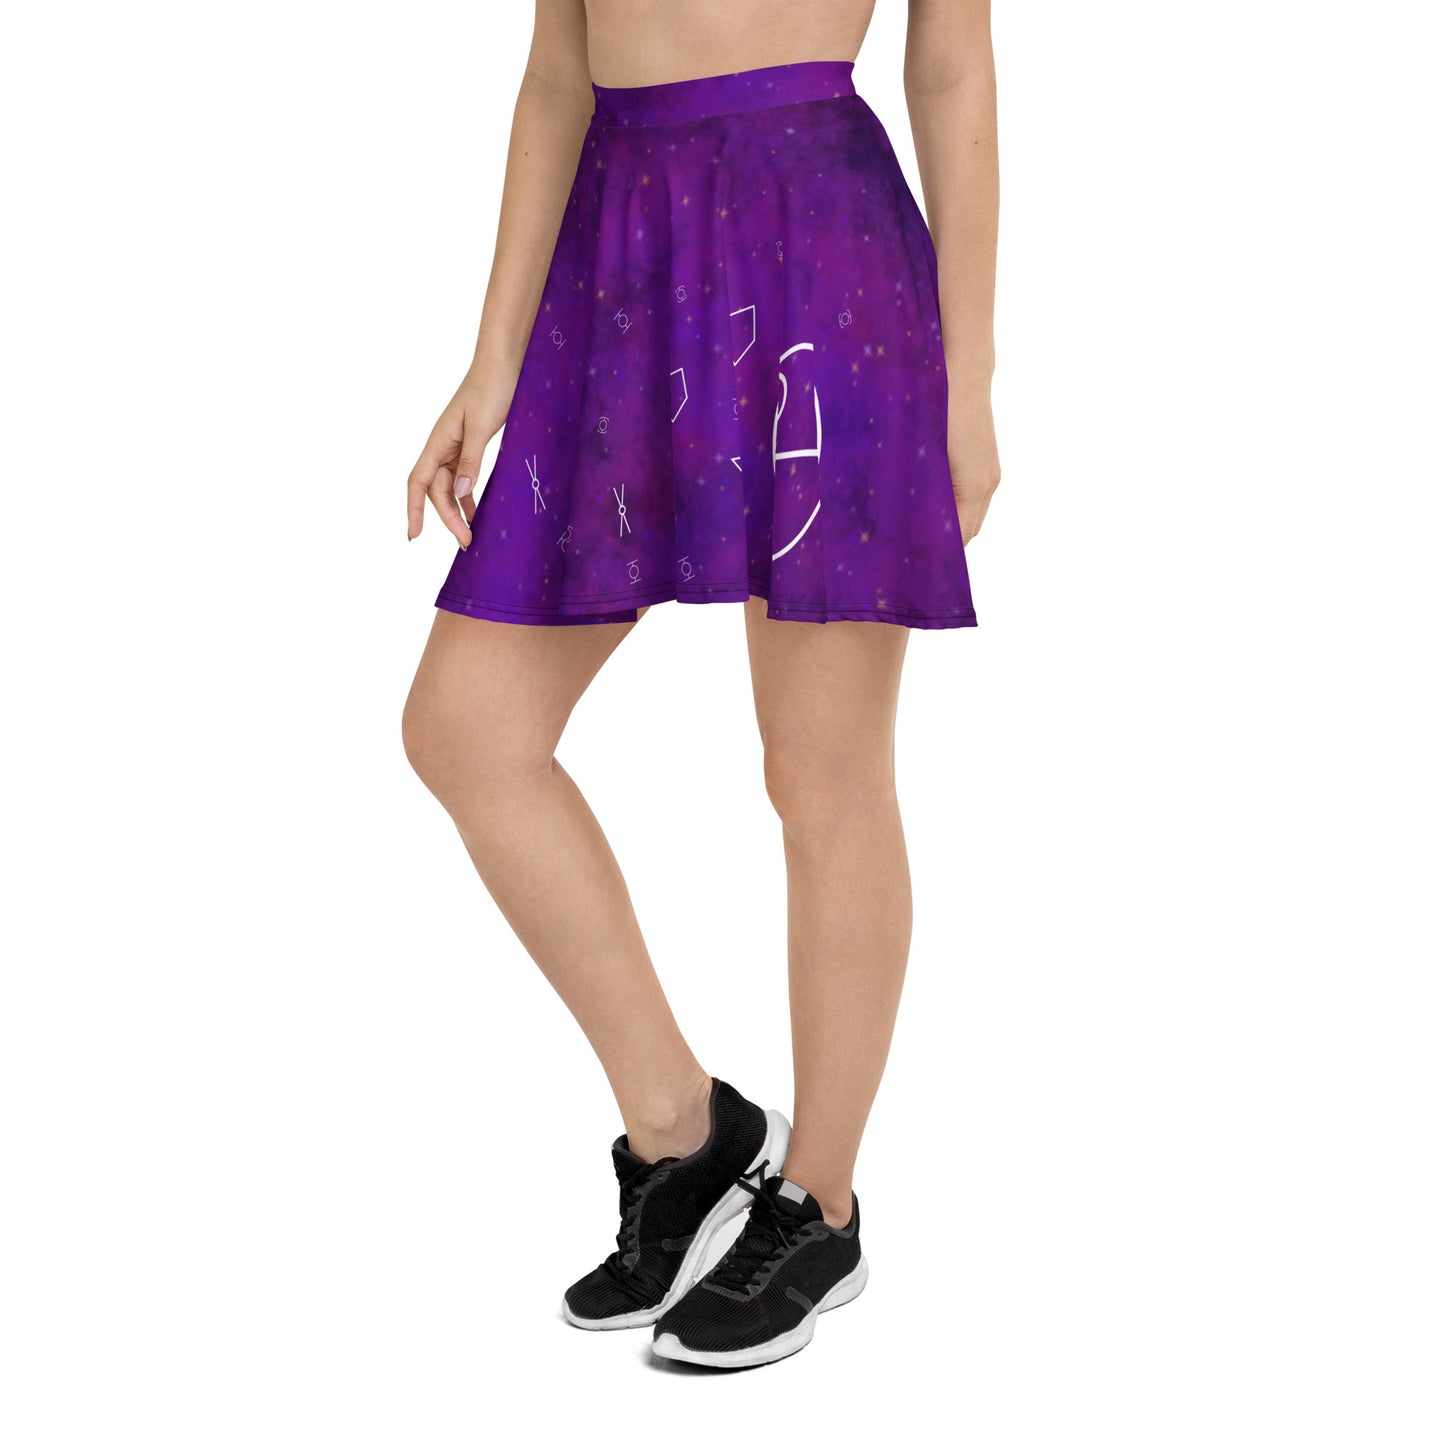 Galaxy War Skater Skirt